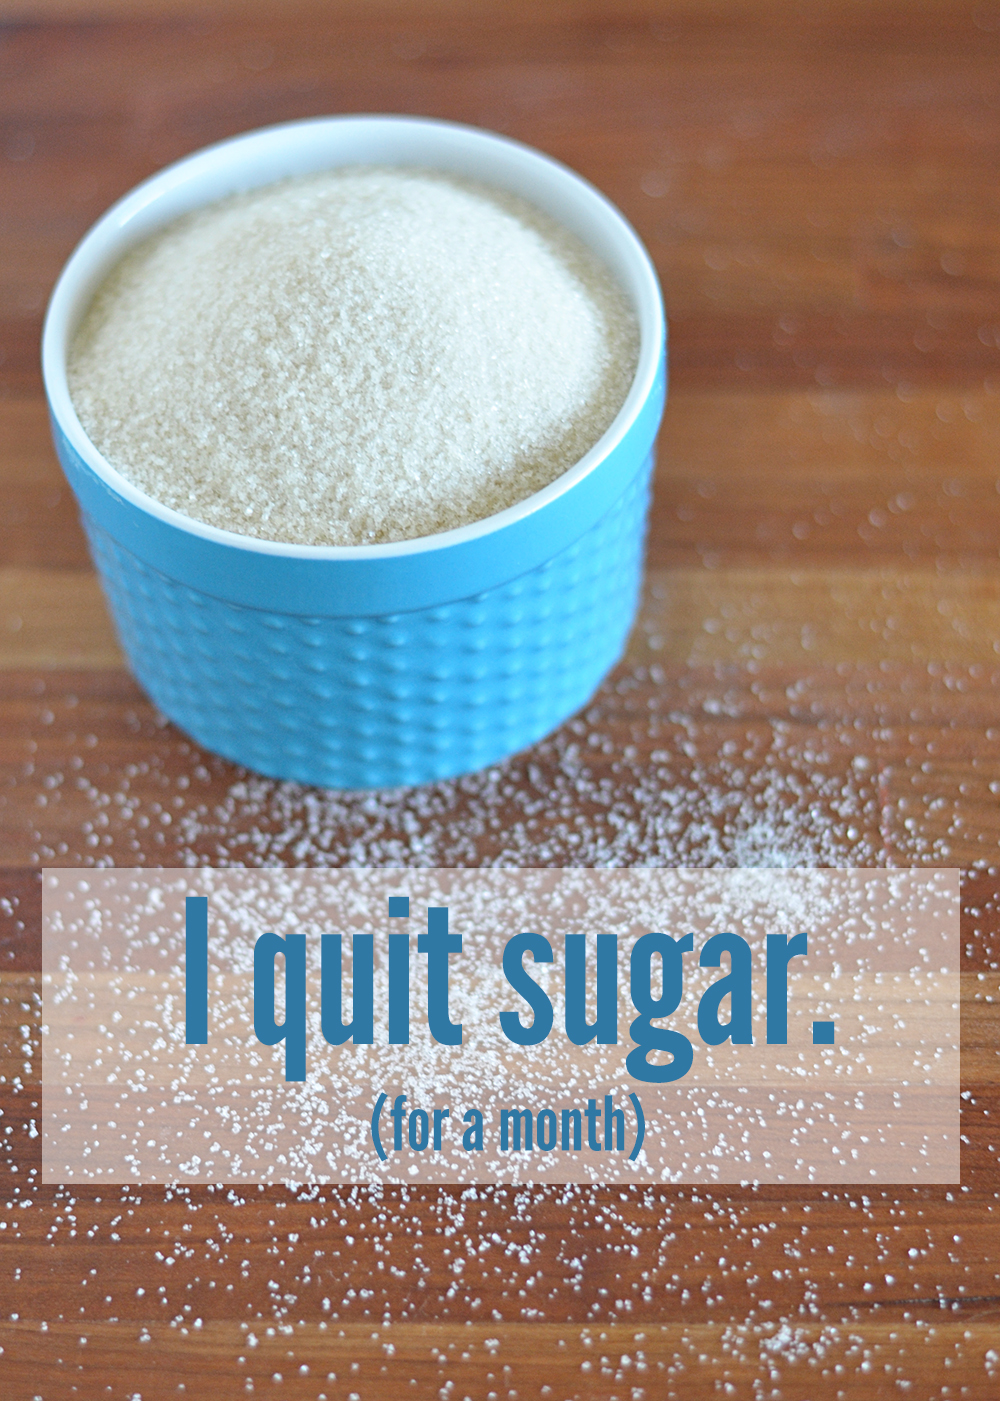 I Quit Sugar